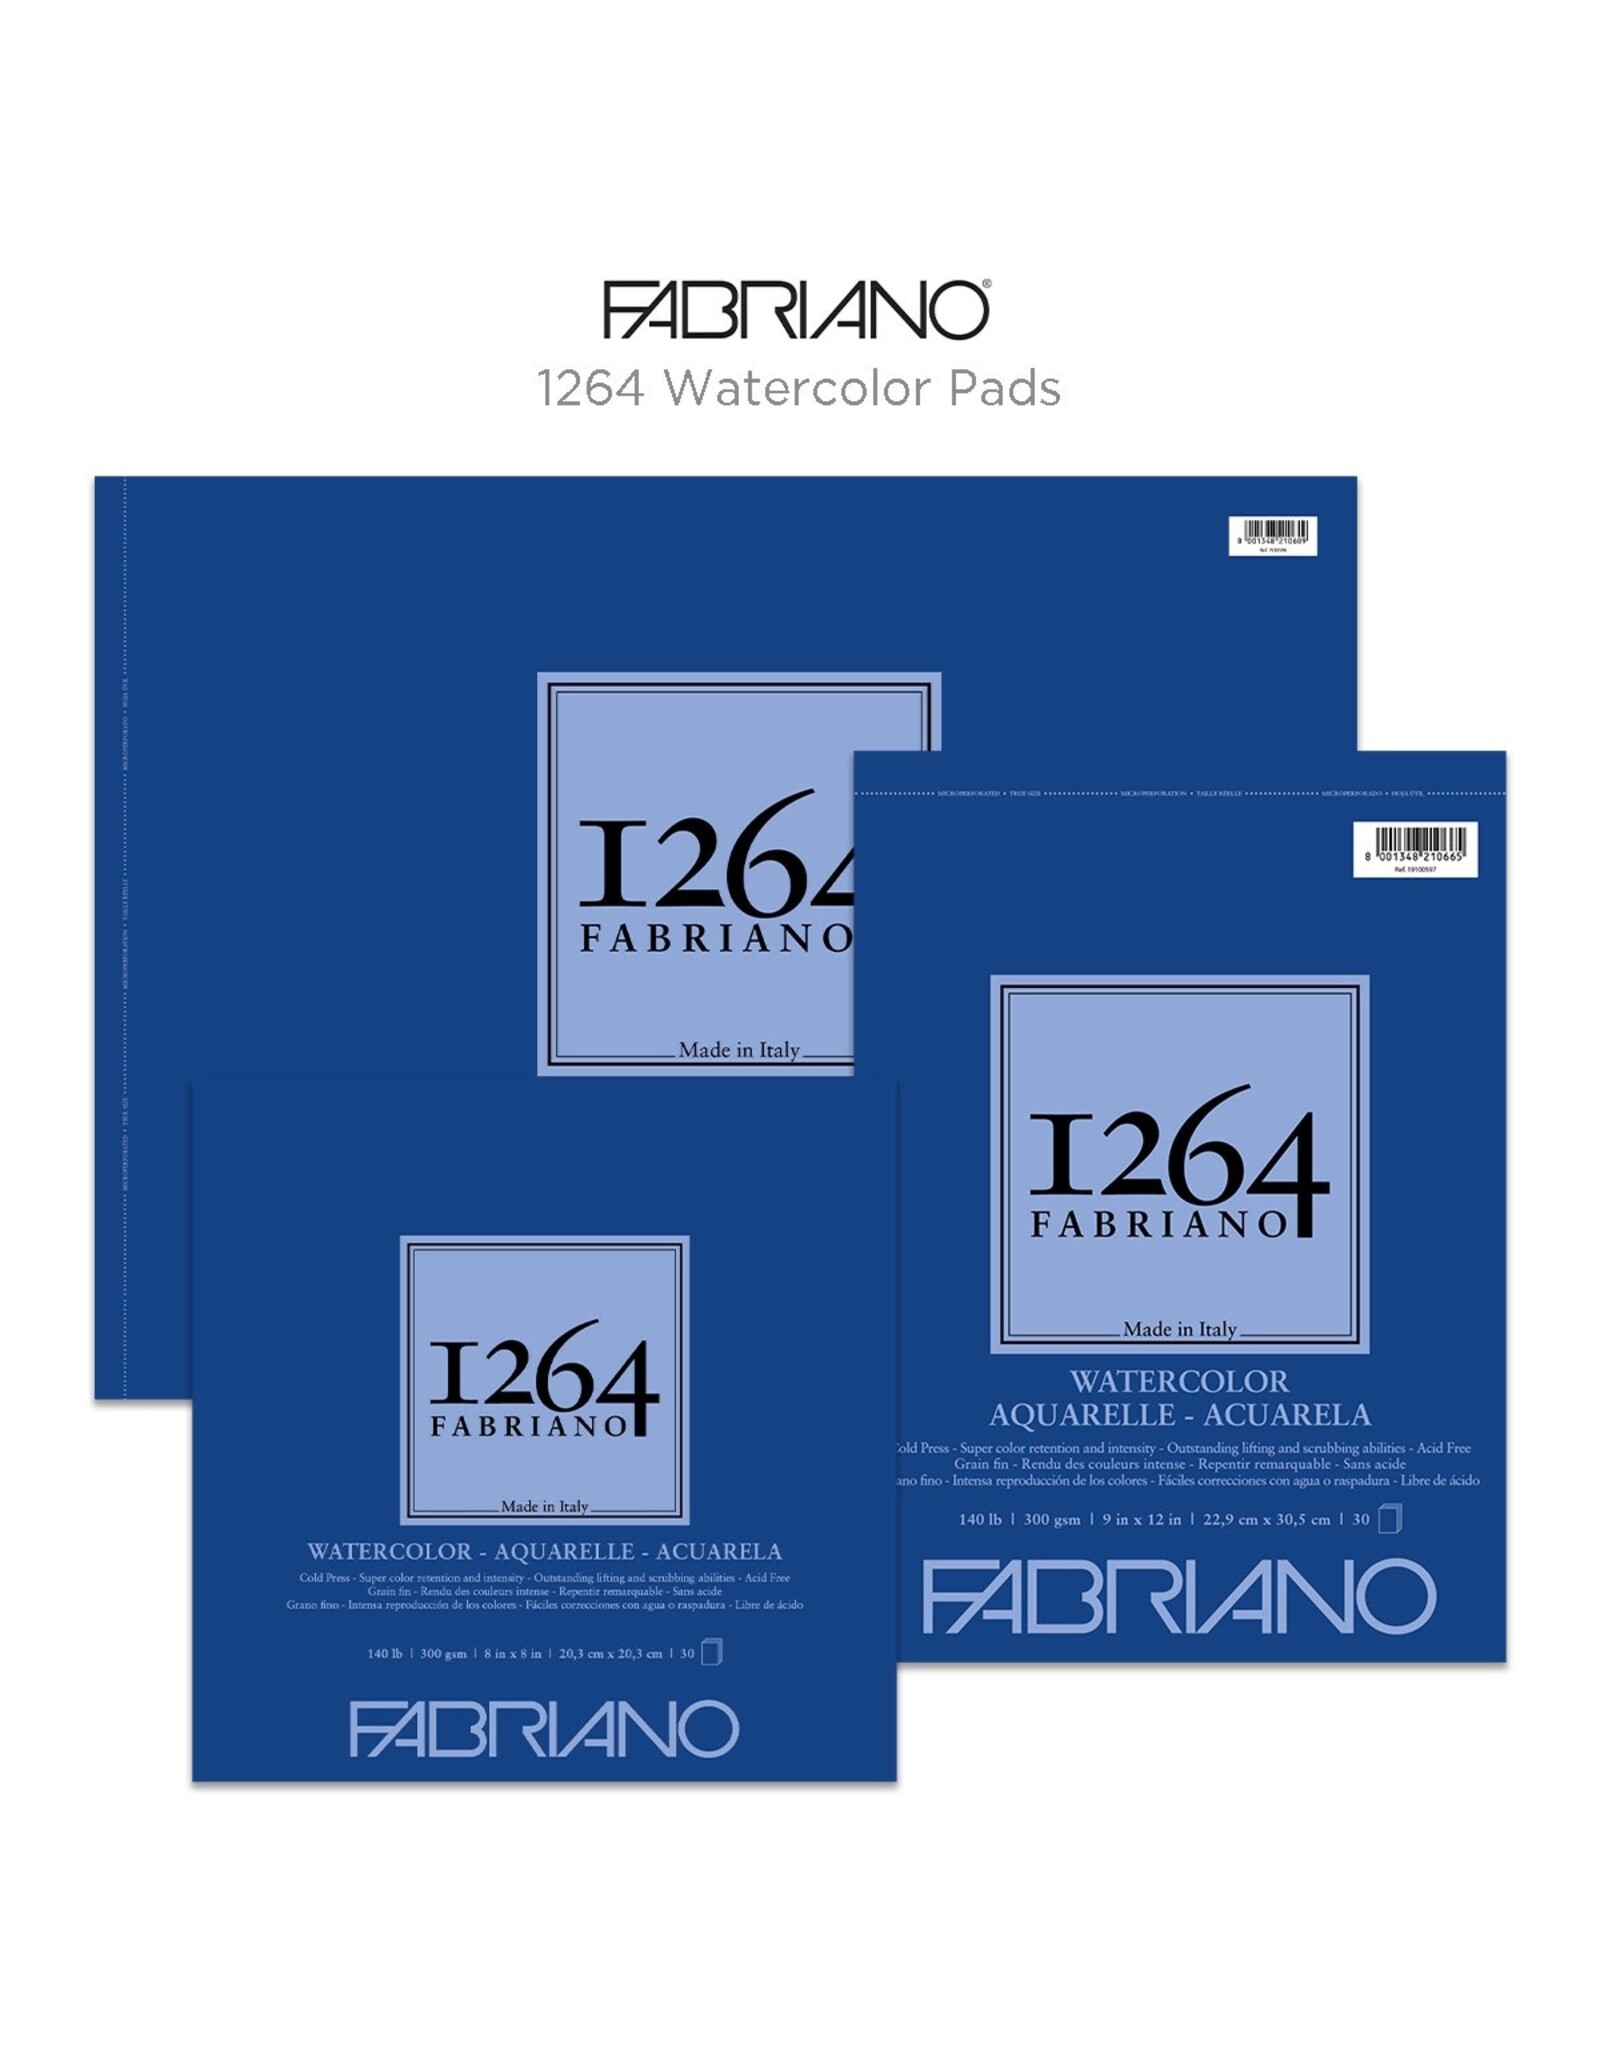 FABRIANO FABRIANO 1264 COLD PRESS 4x8 WATERCOLOR PAD 30 SHEETS